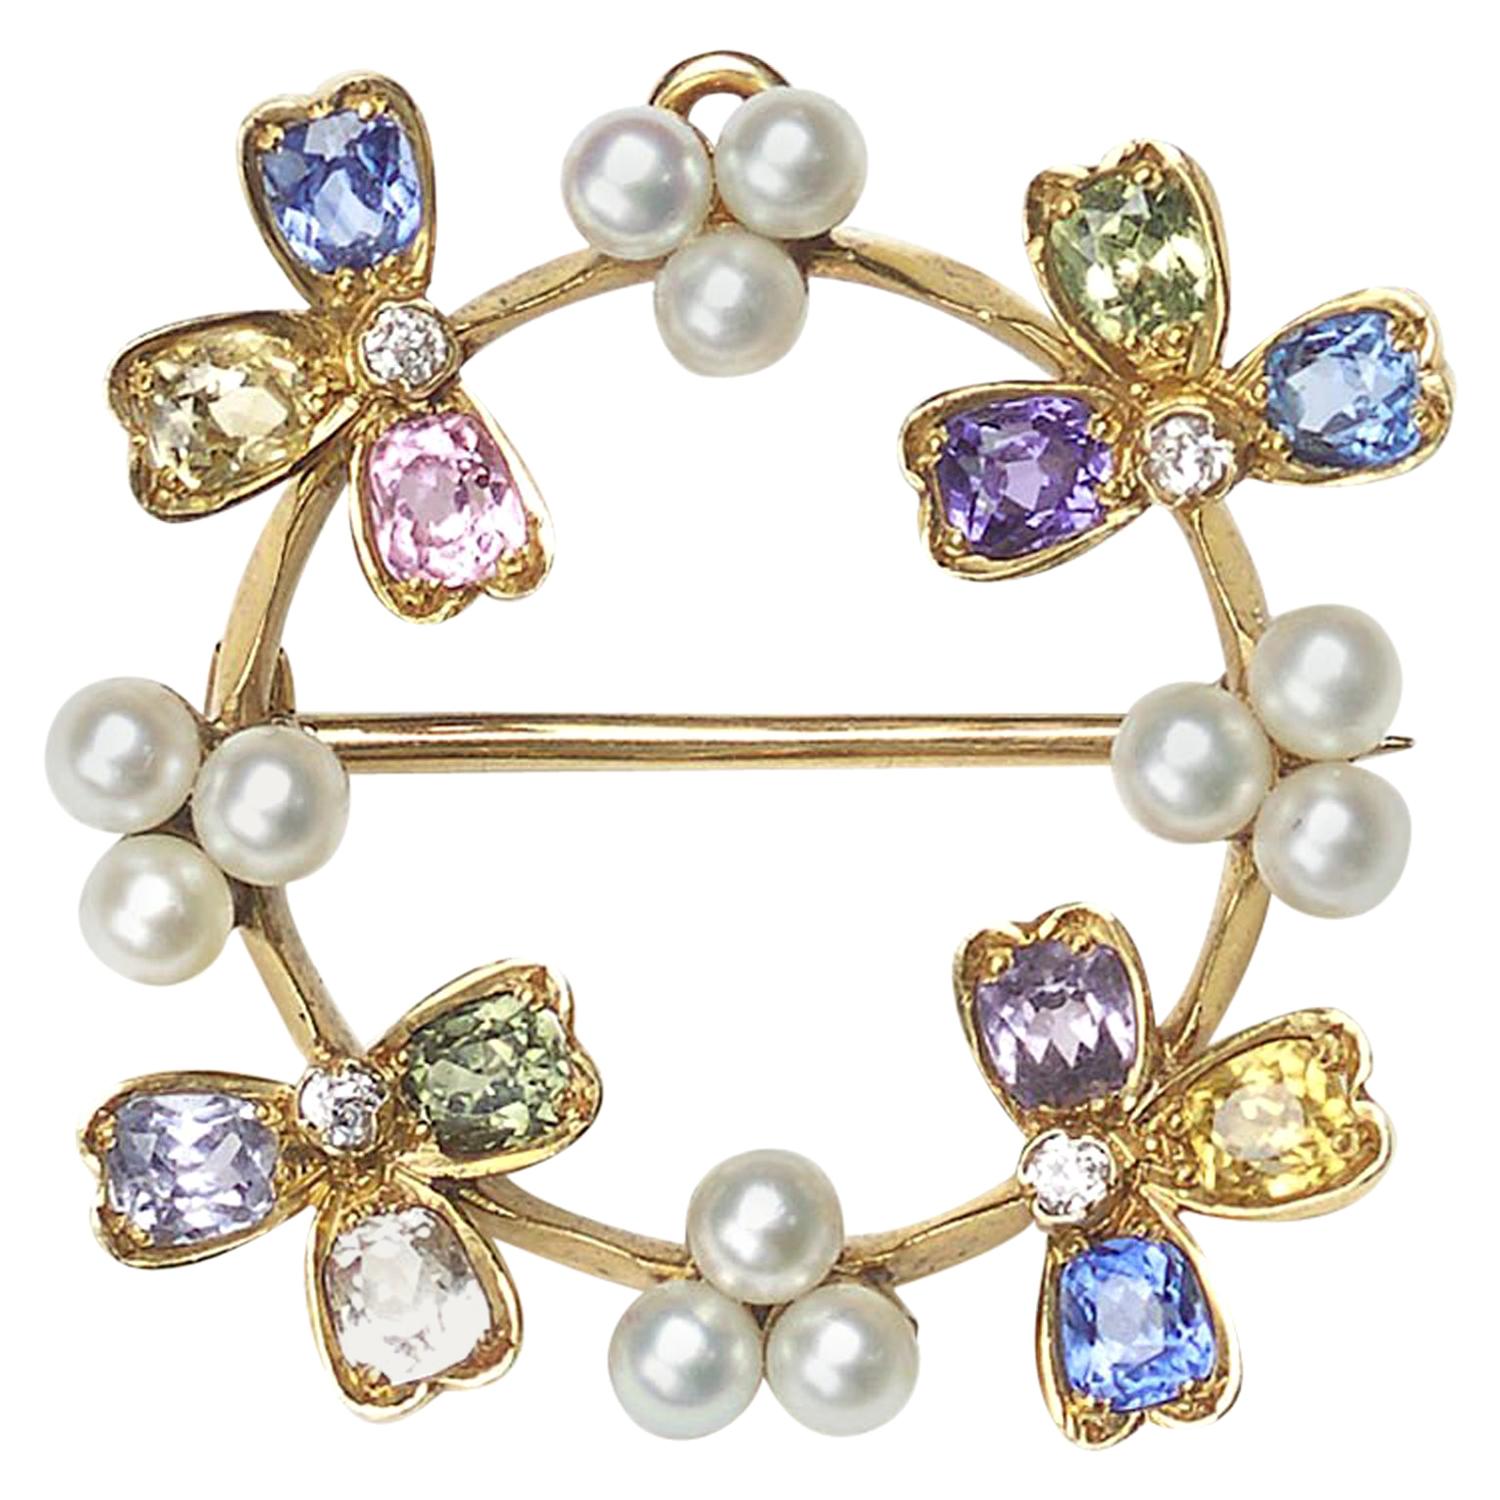 Vintage Tiffany & Co. Broche pendentif en or et perles serties de pierres précieuses, c. 1937